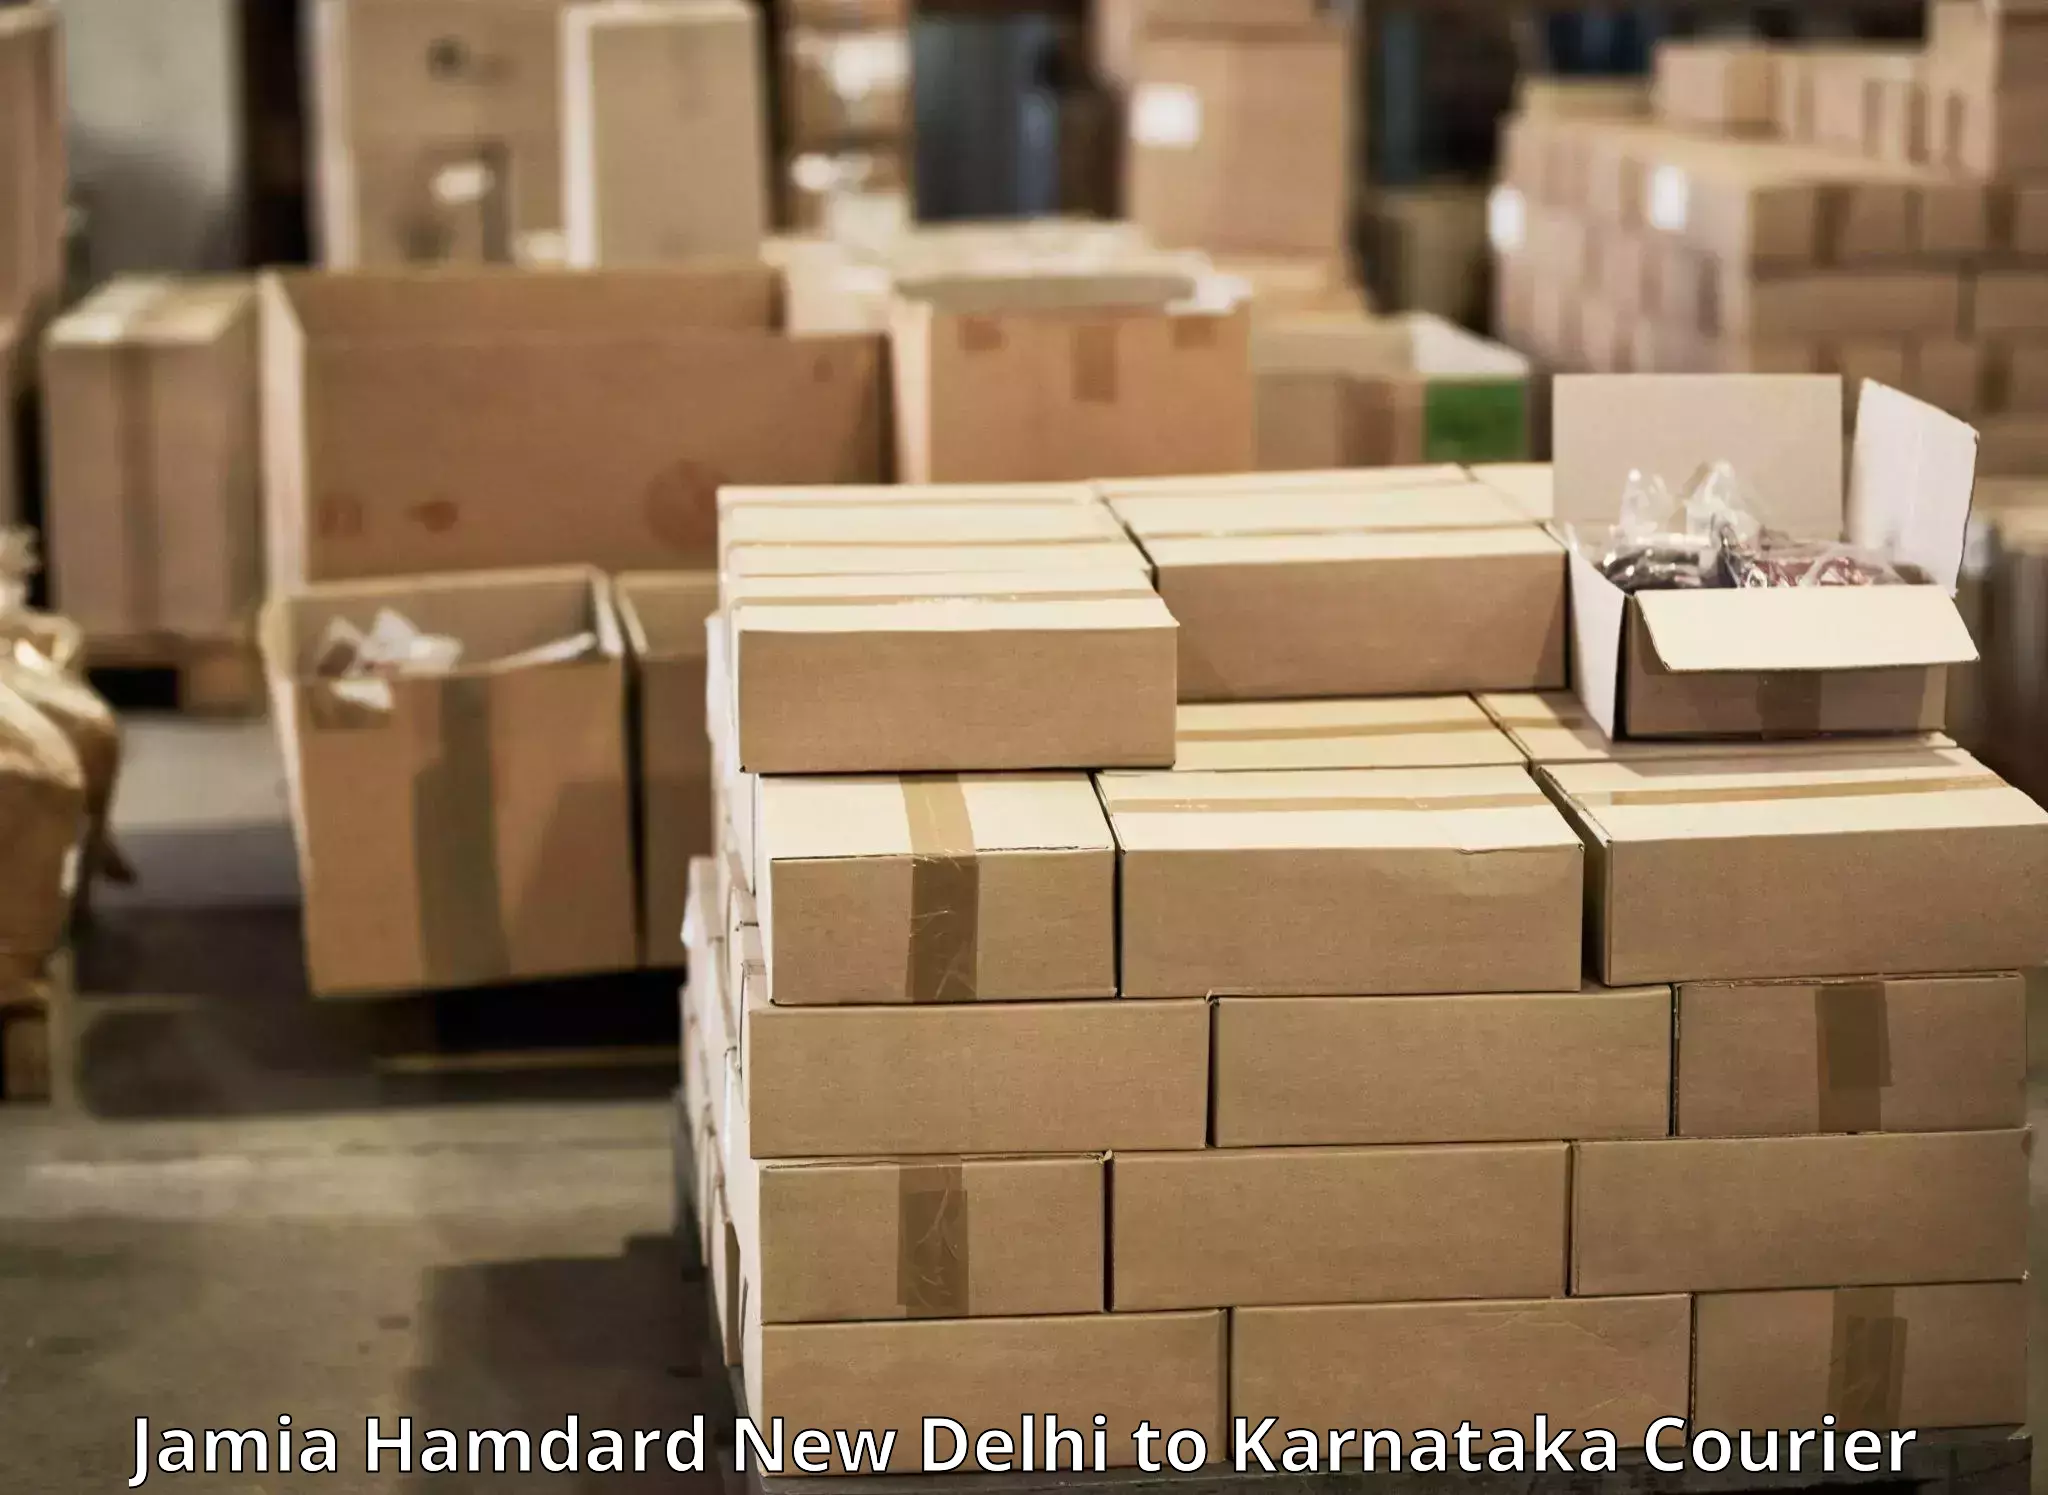 Express mail solutions Jamia Hamdard New Delhi to Anavatti